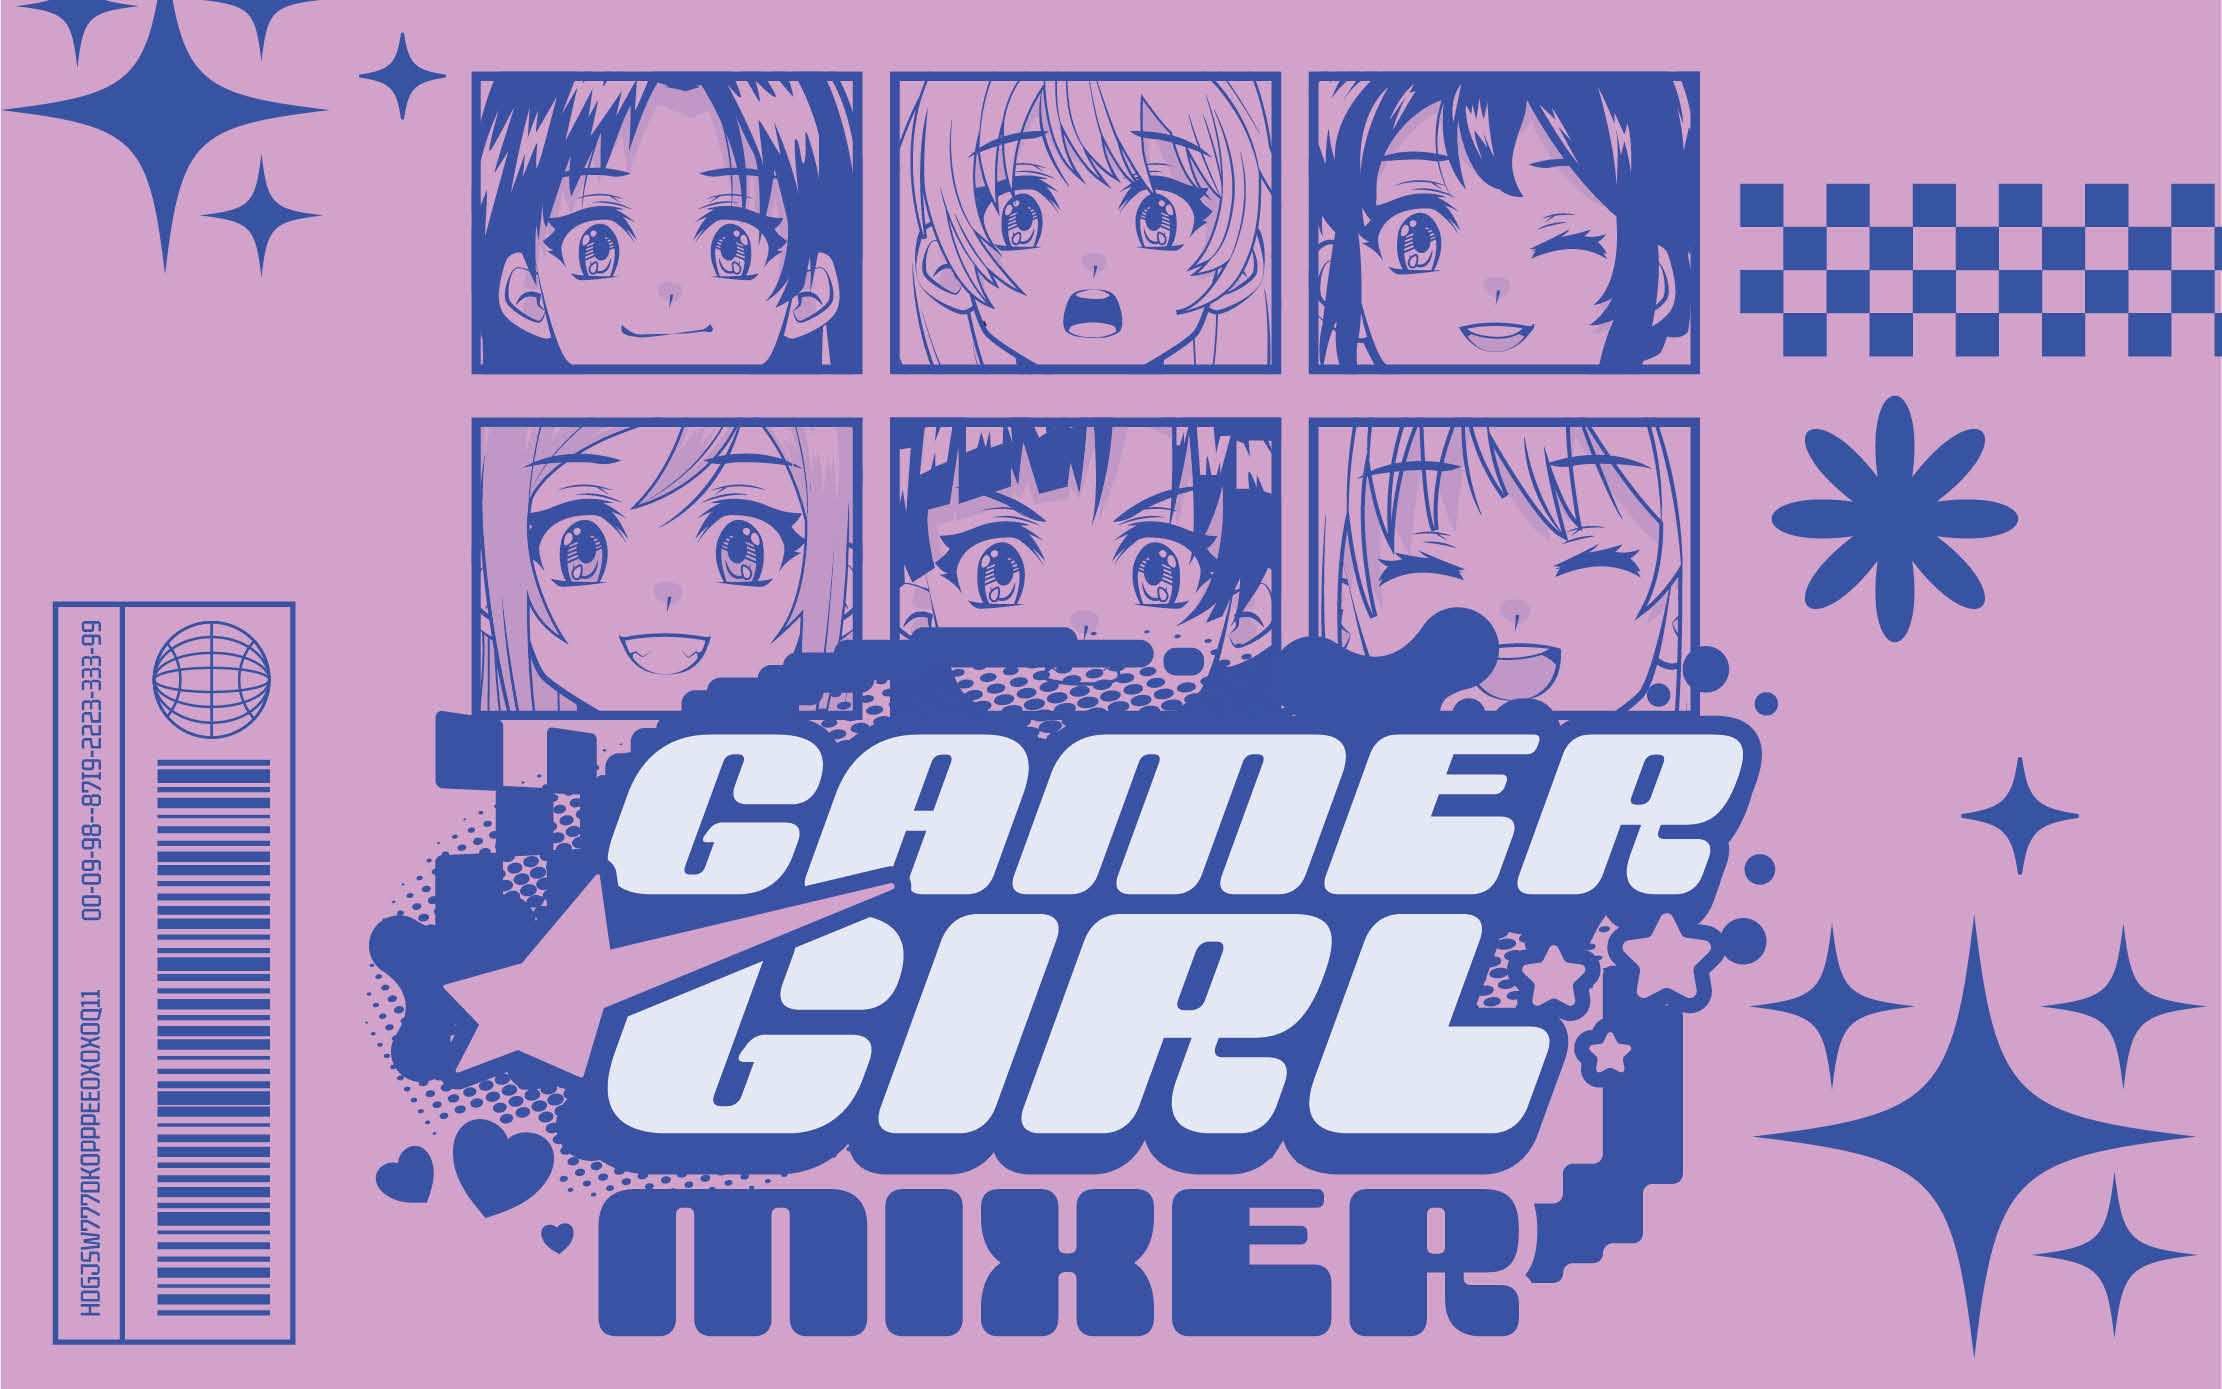 Gamer Girl Mixer